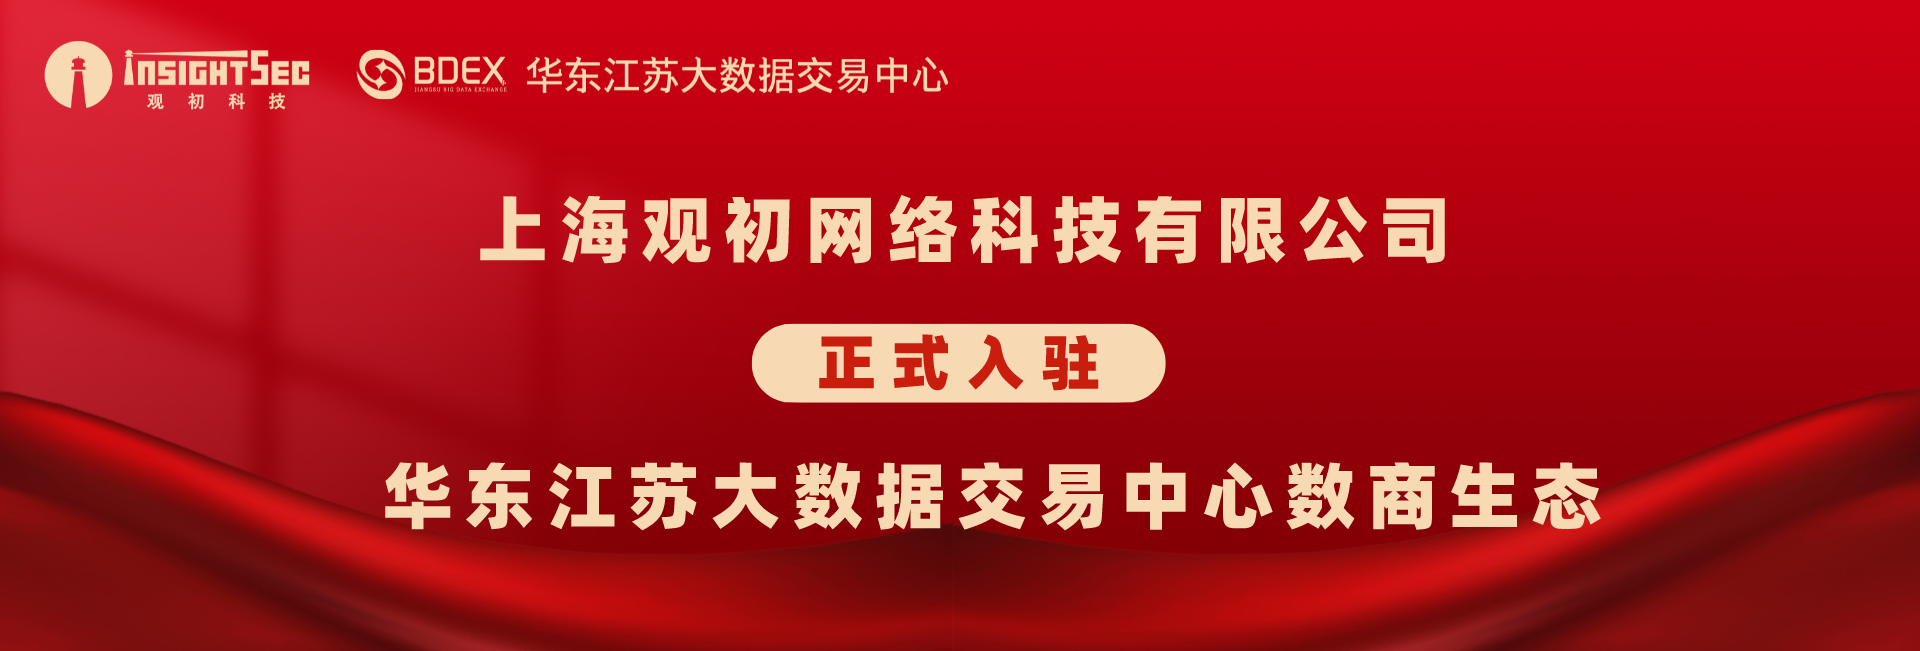 上海知上網絡科技有限公司正式入駐華東江蘇大數據交易中心數商生态.png 